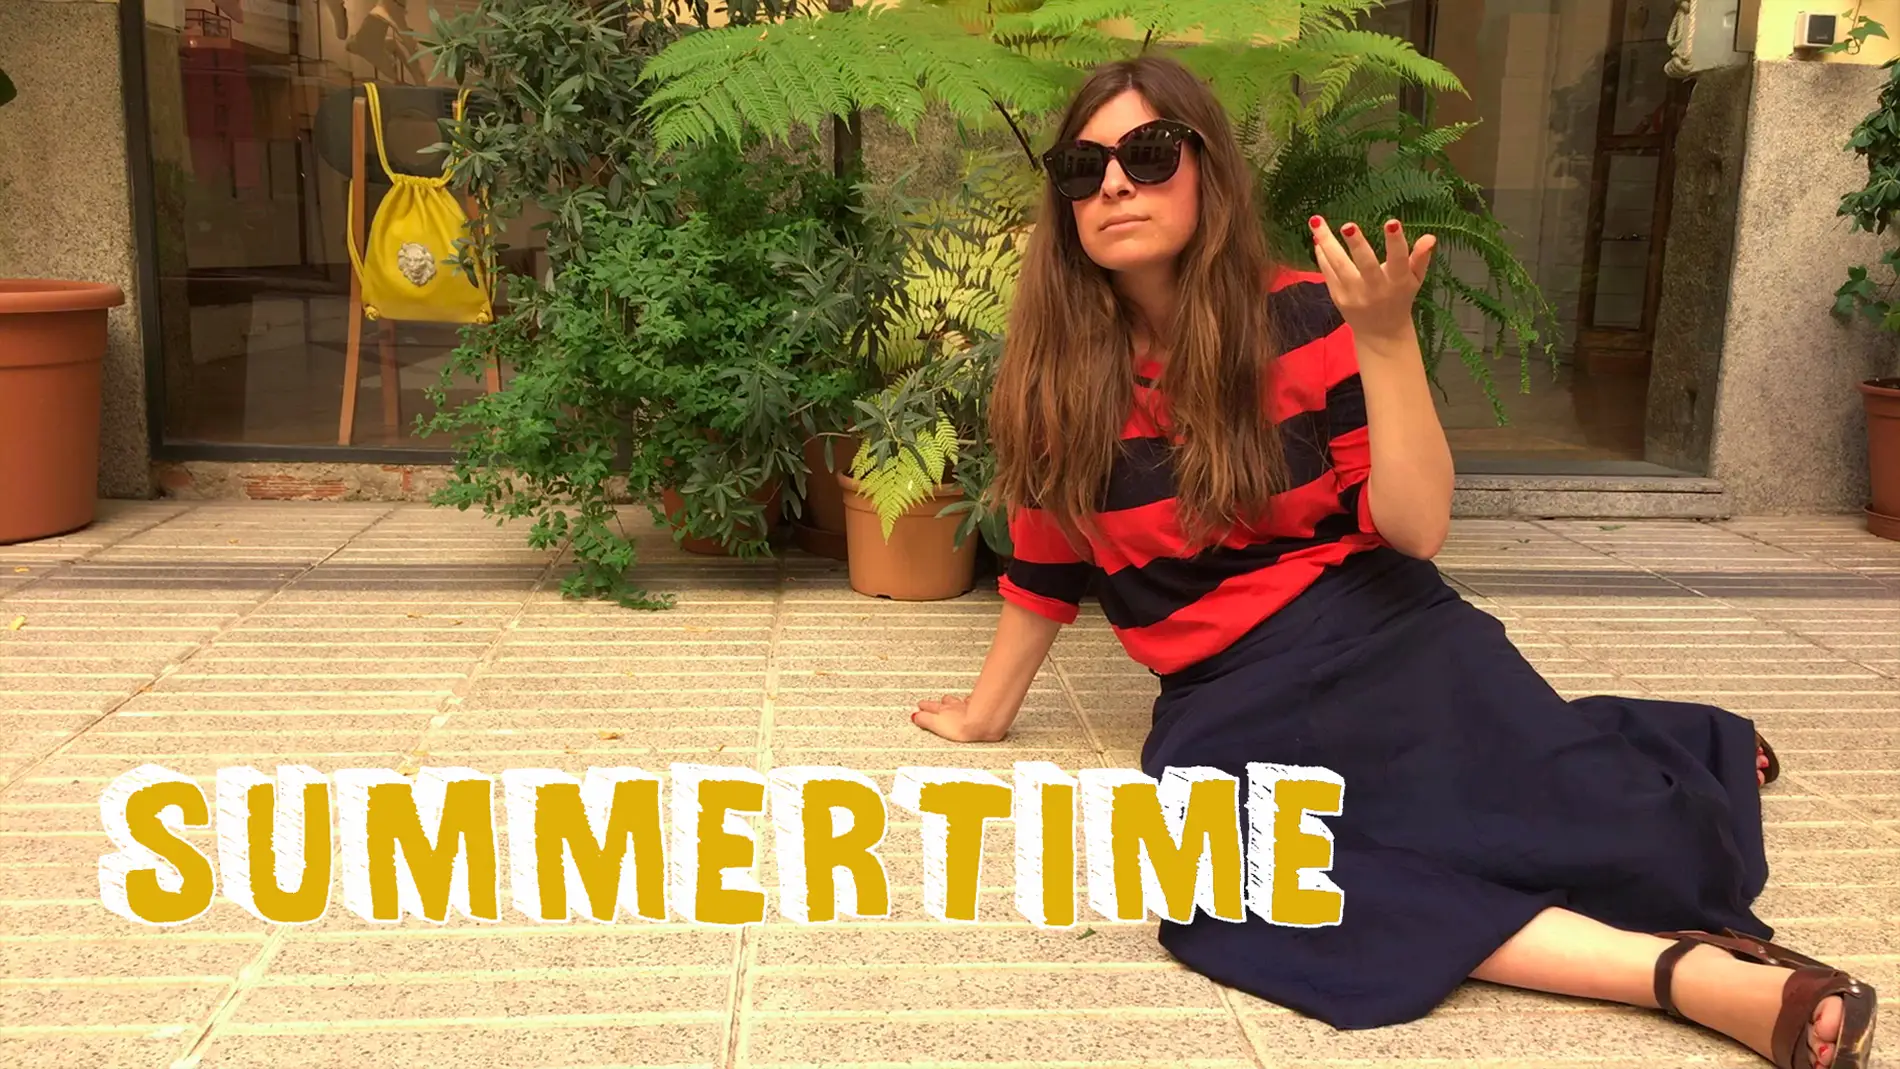 Summertime: 'Para locura de verano, el de Cristina Cifuentes'